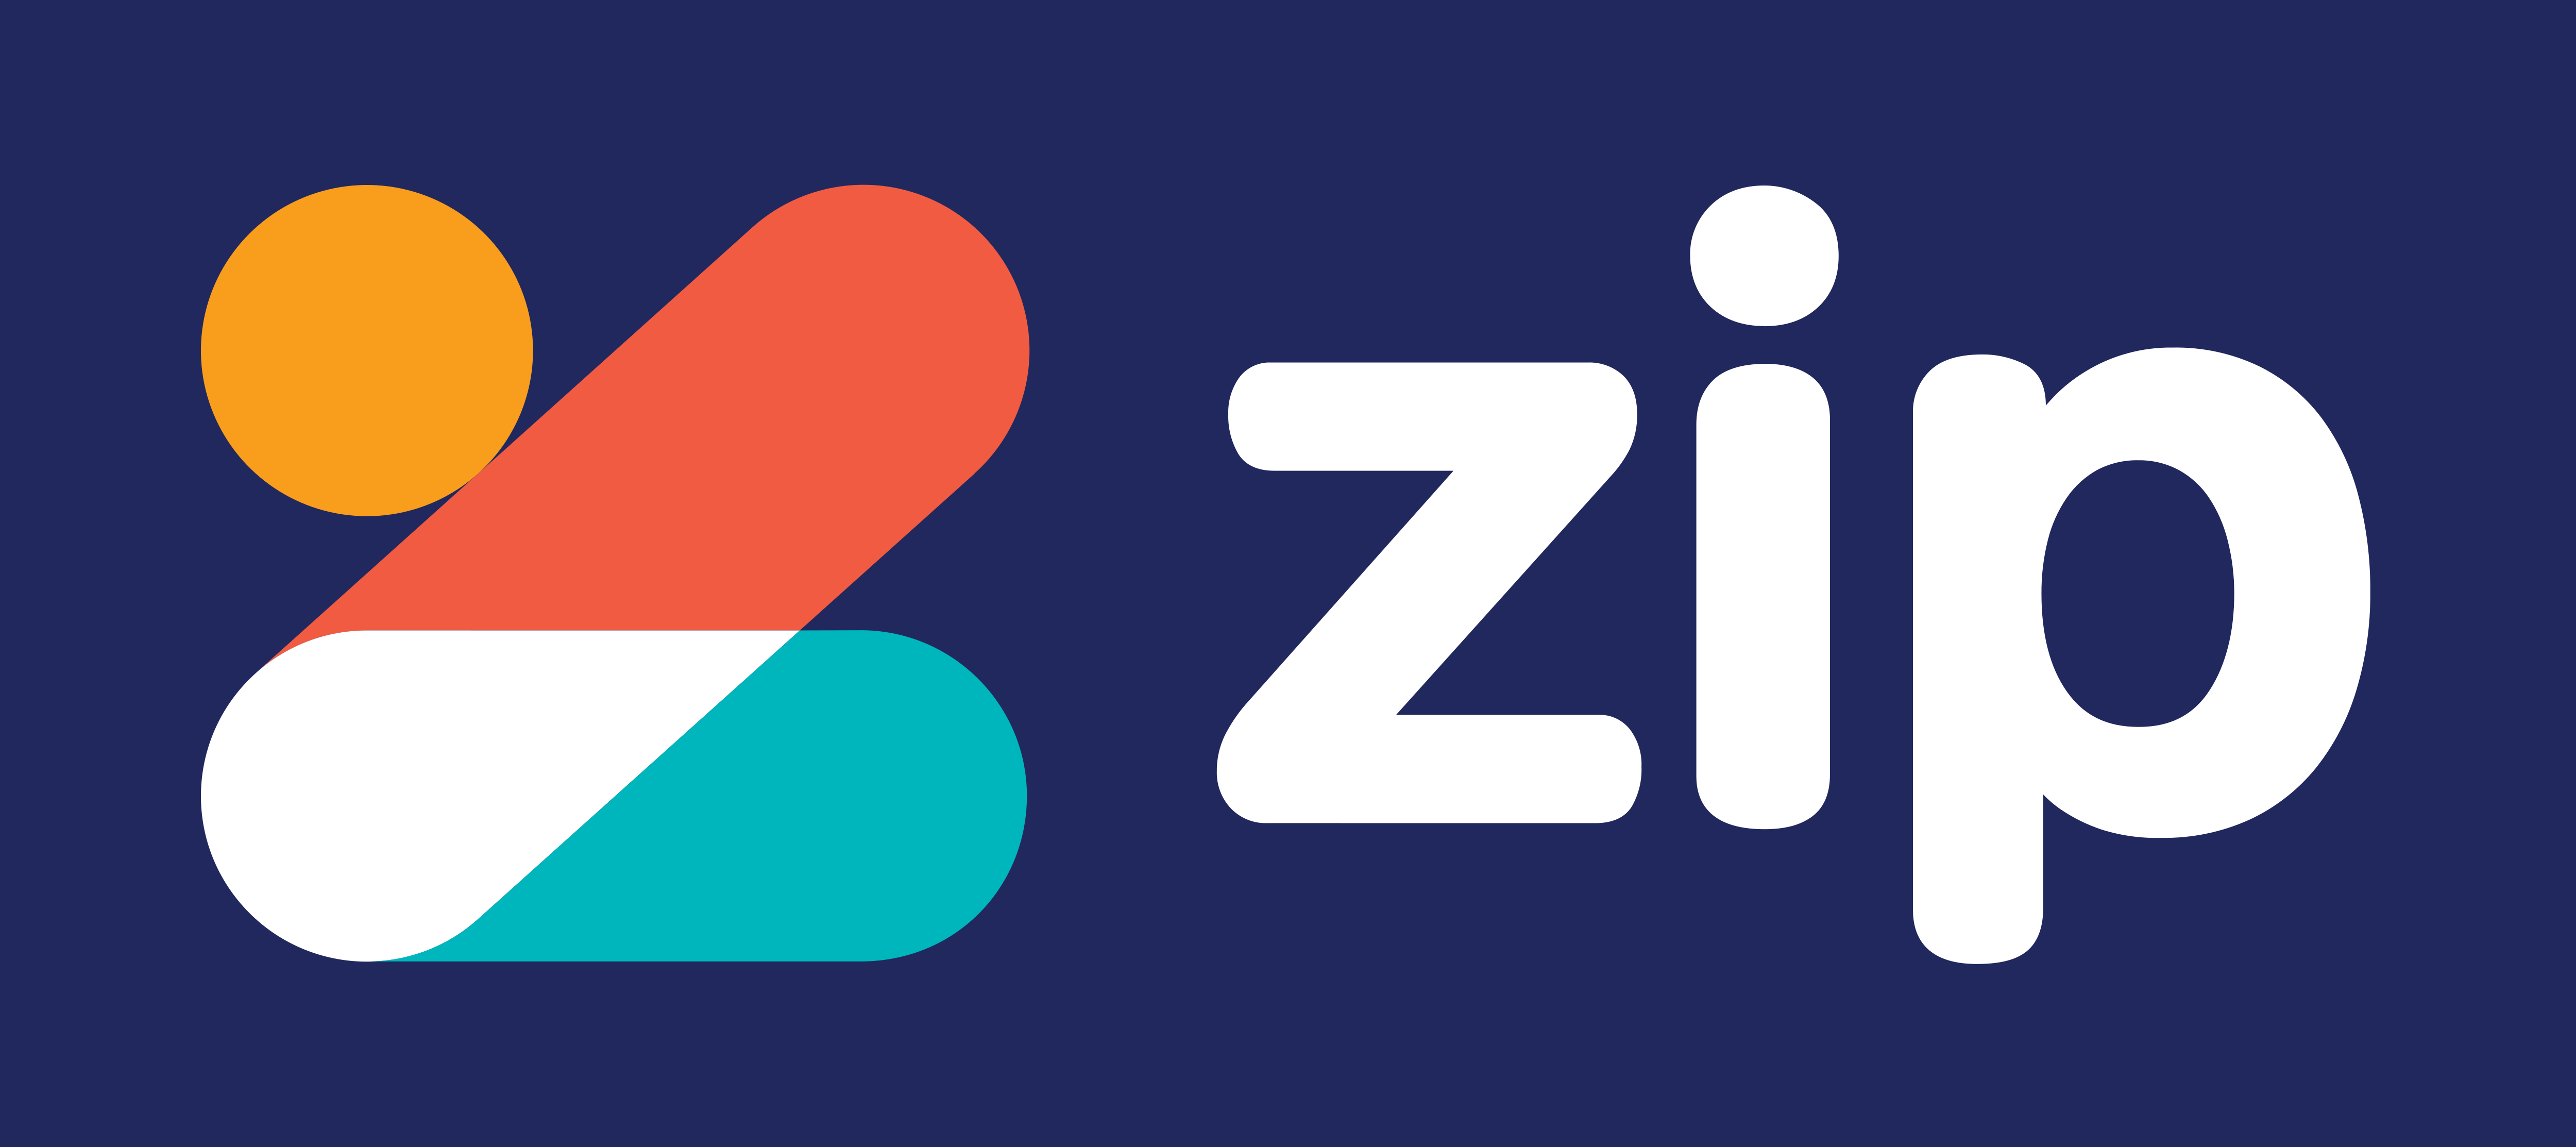 zip-pay-zip-money-logos-download